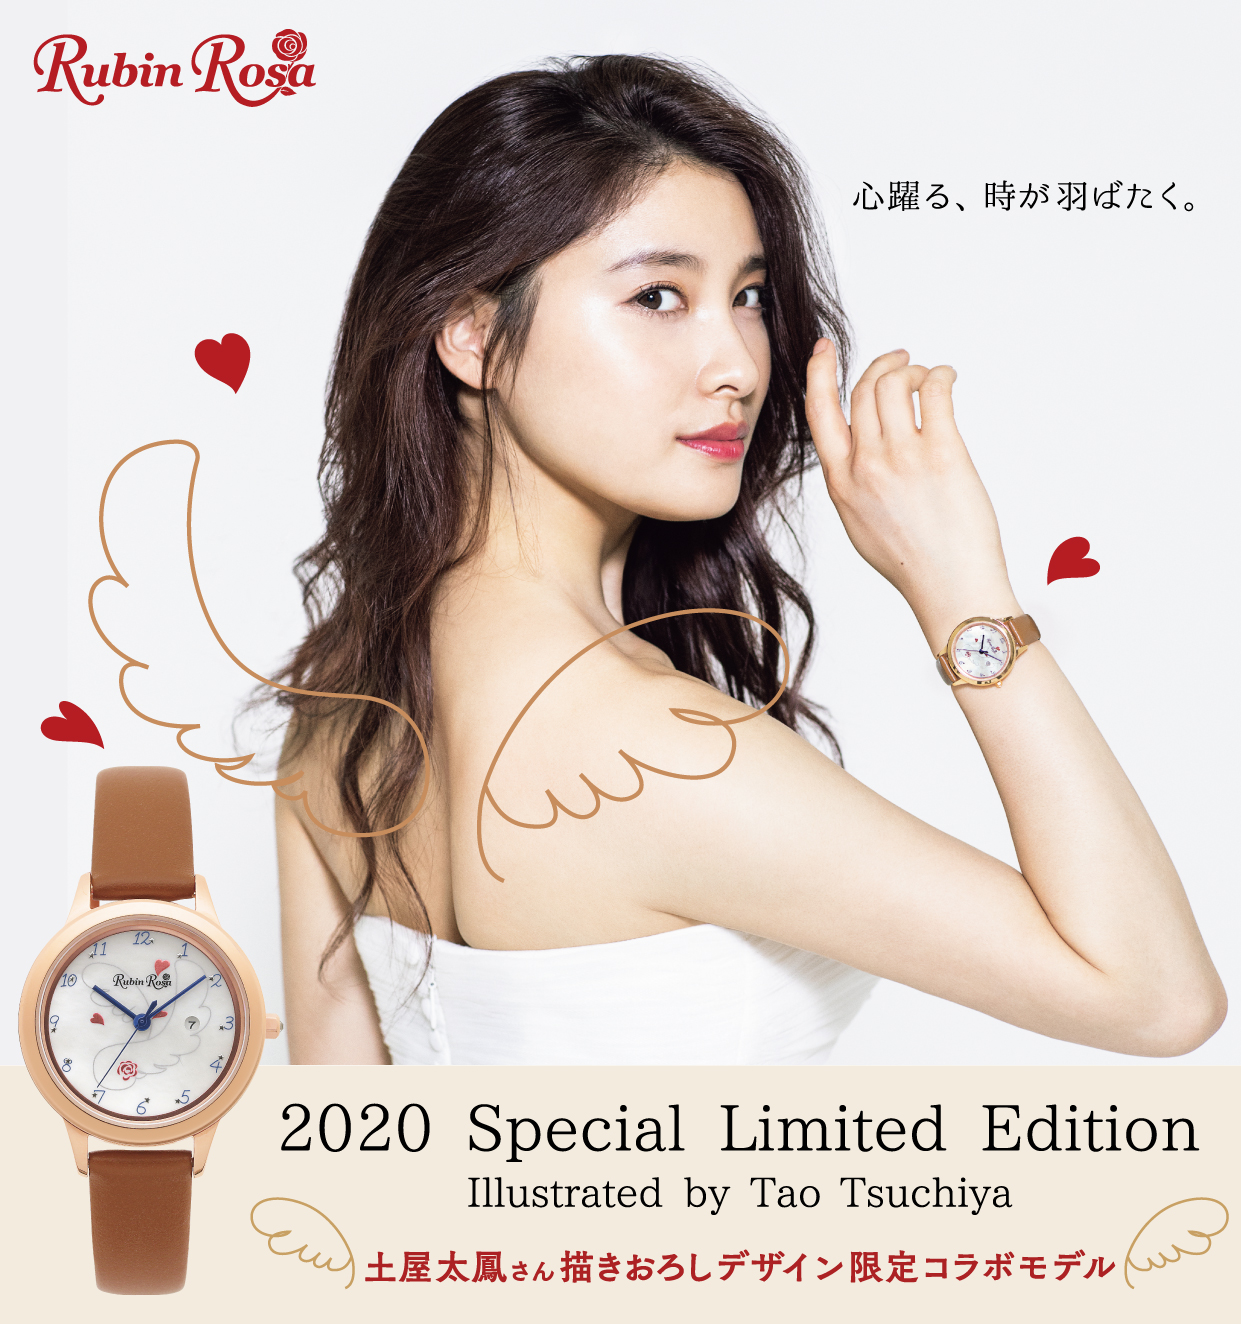 Rubin Rosa ソーラー腕時計